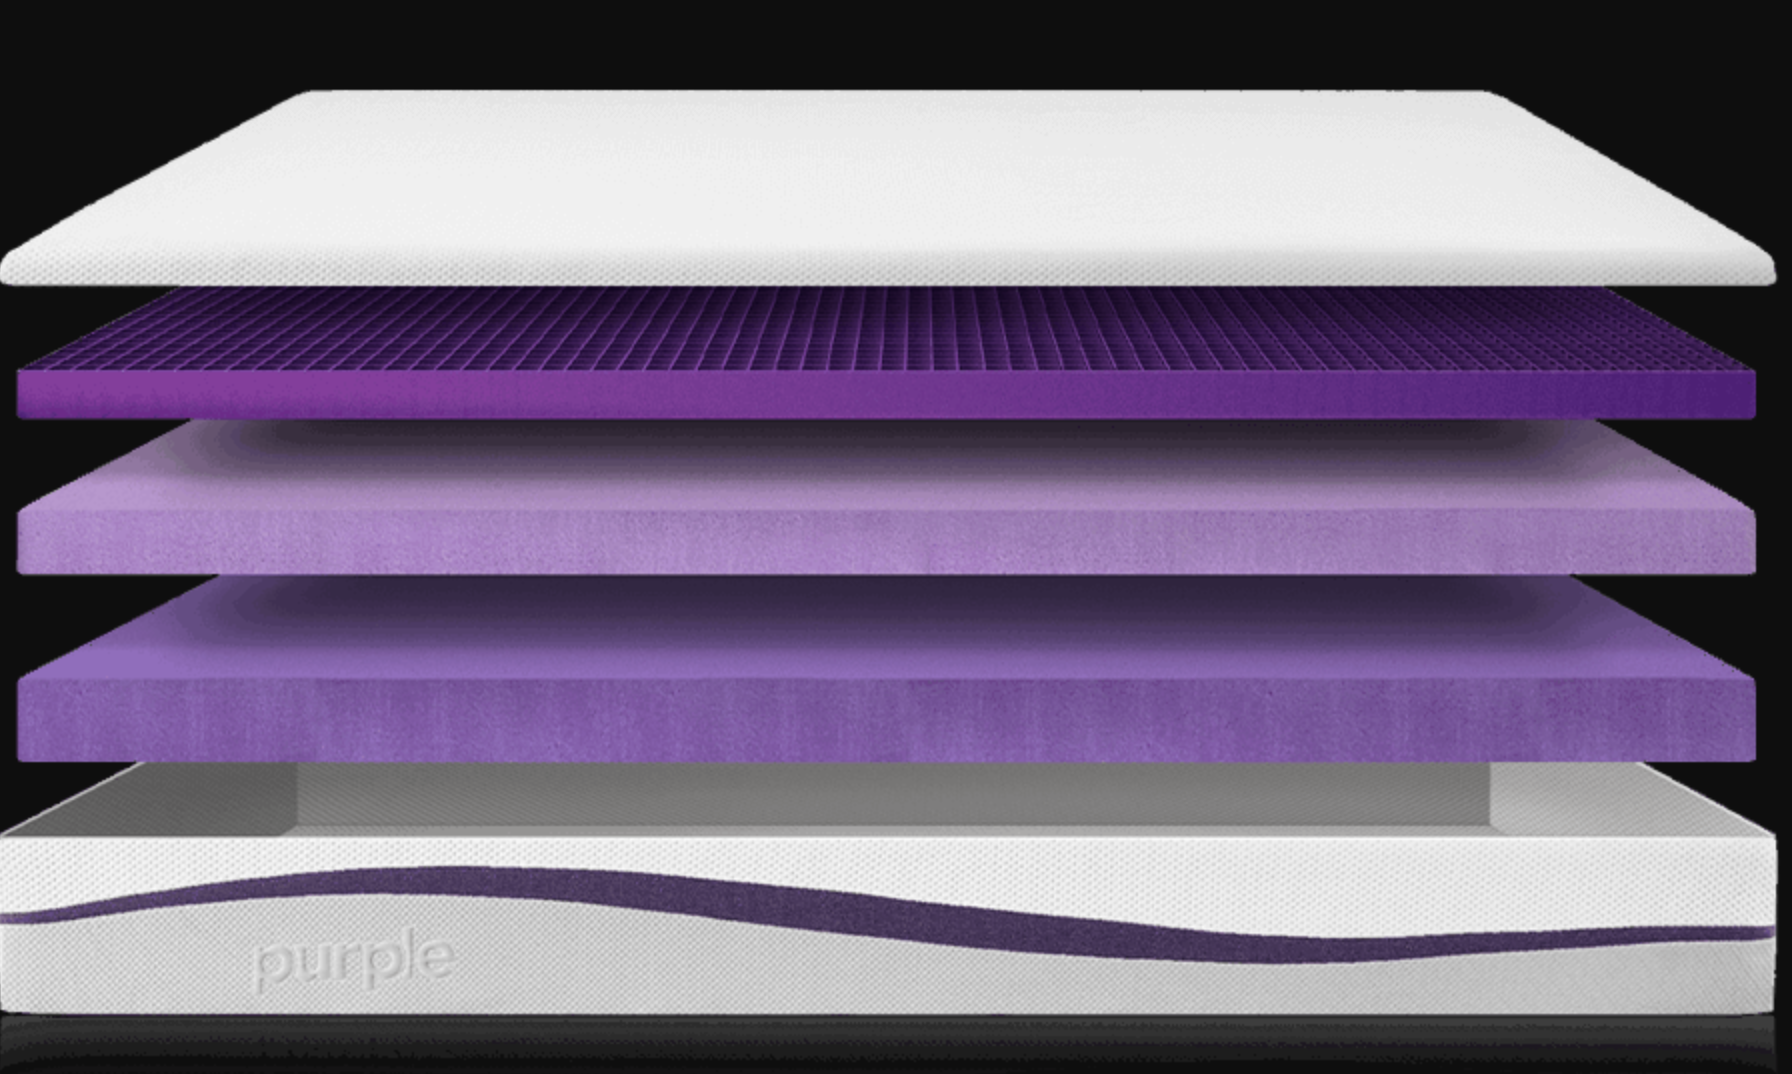 purple mattress in germany